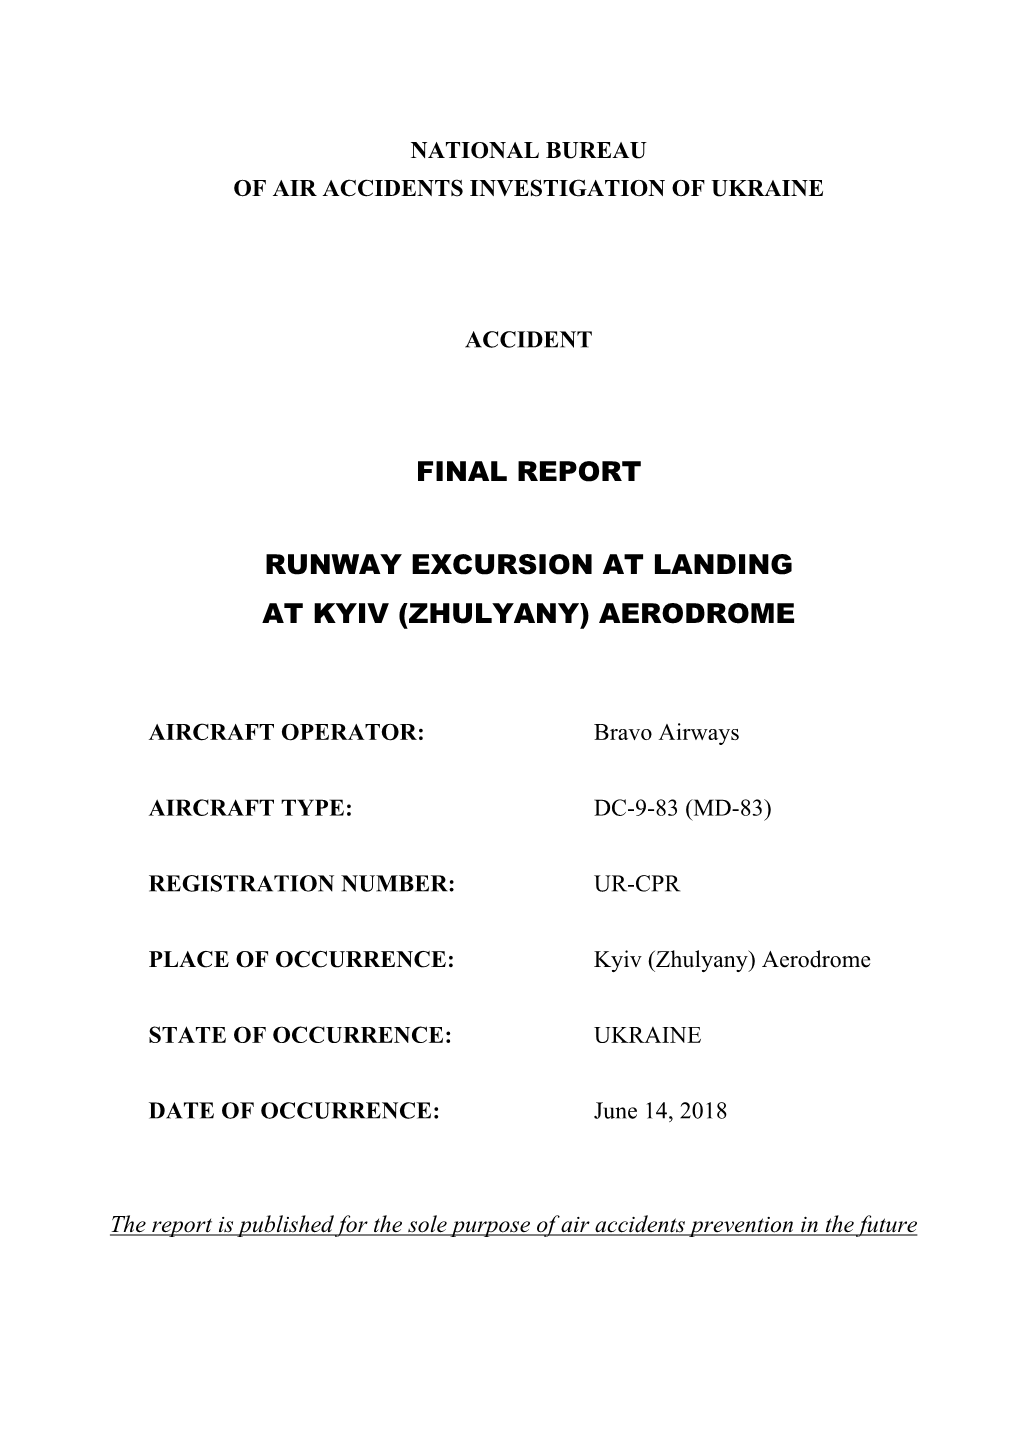 Final Report Runway Excursion at Landing at Kyiv